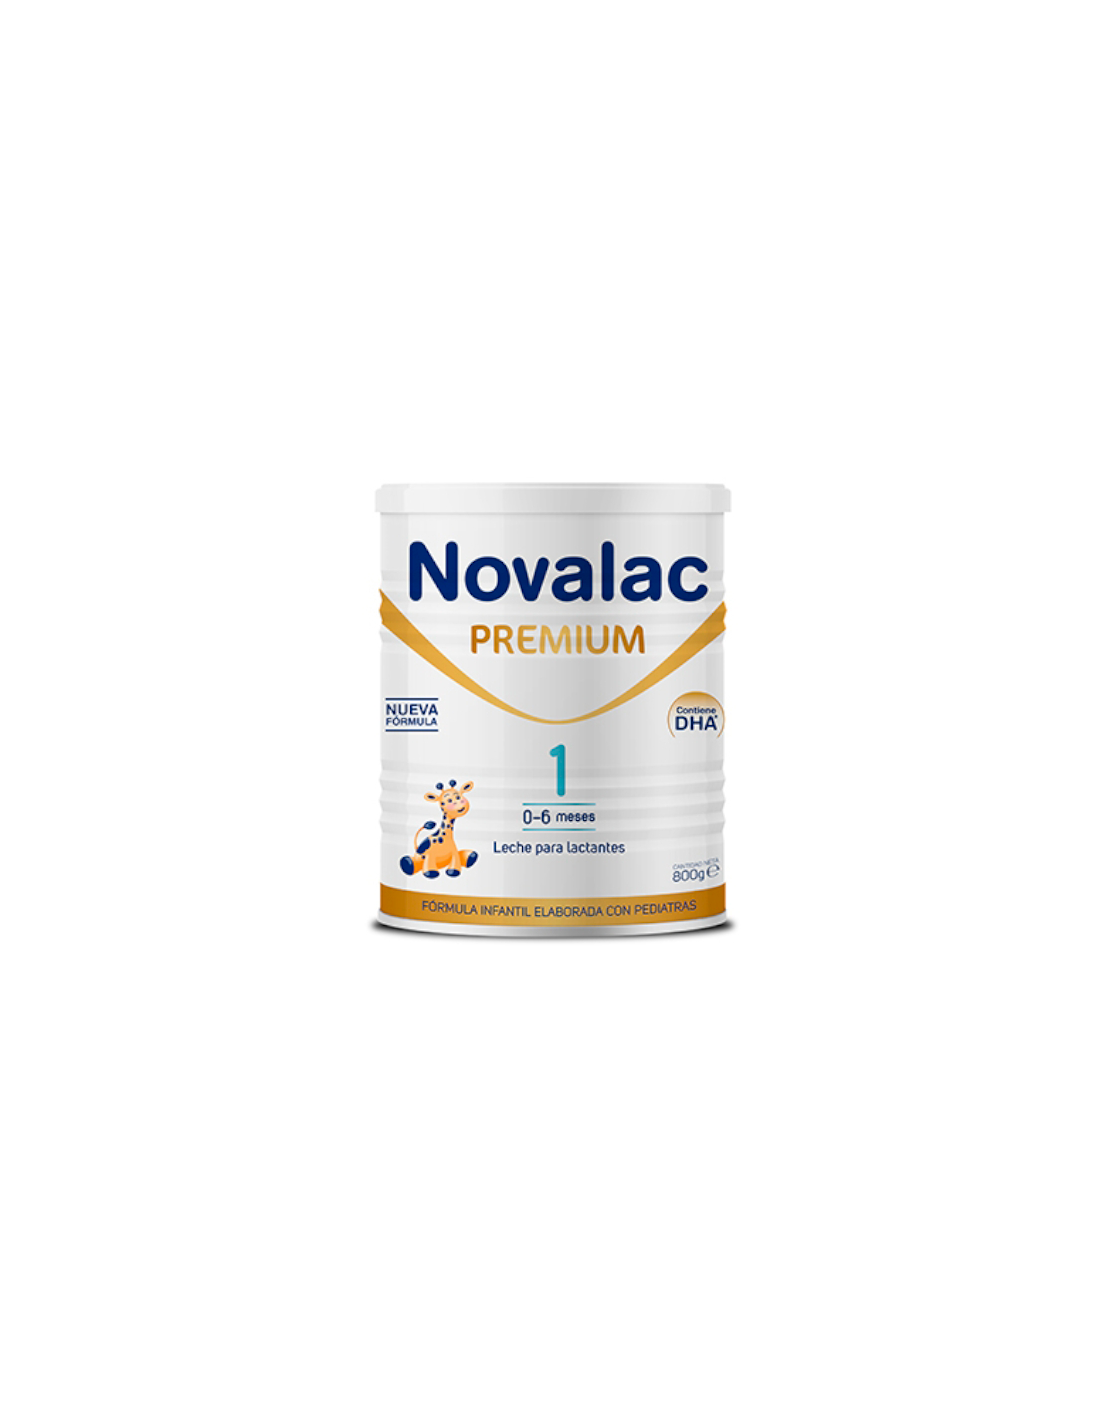 Novalac Premium 1 Leche Para Lactantes 800 gr